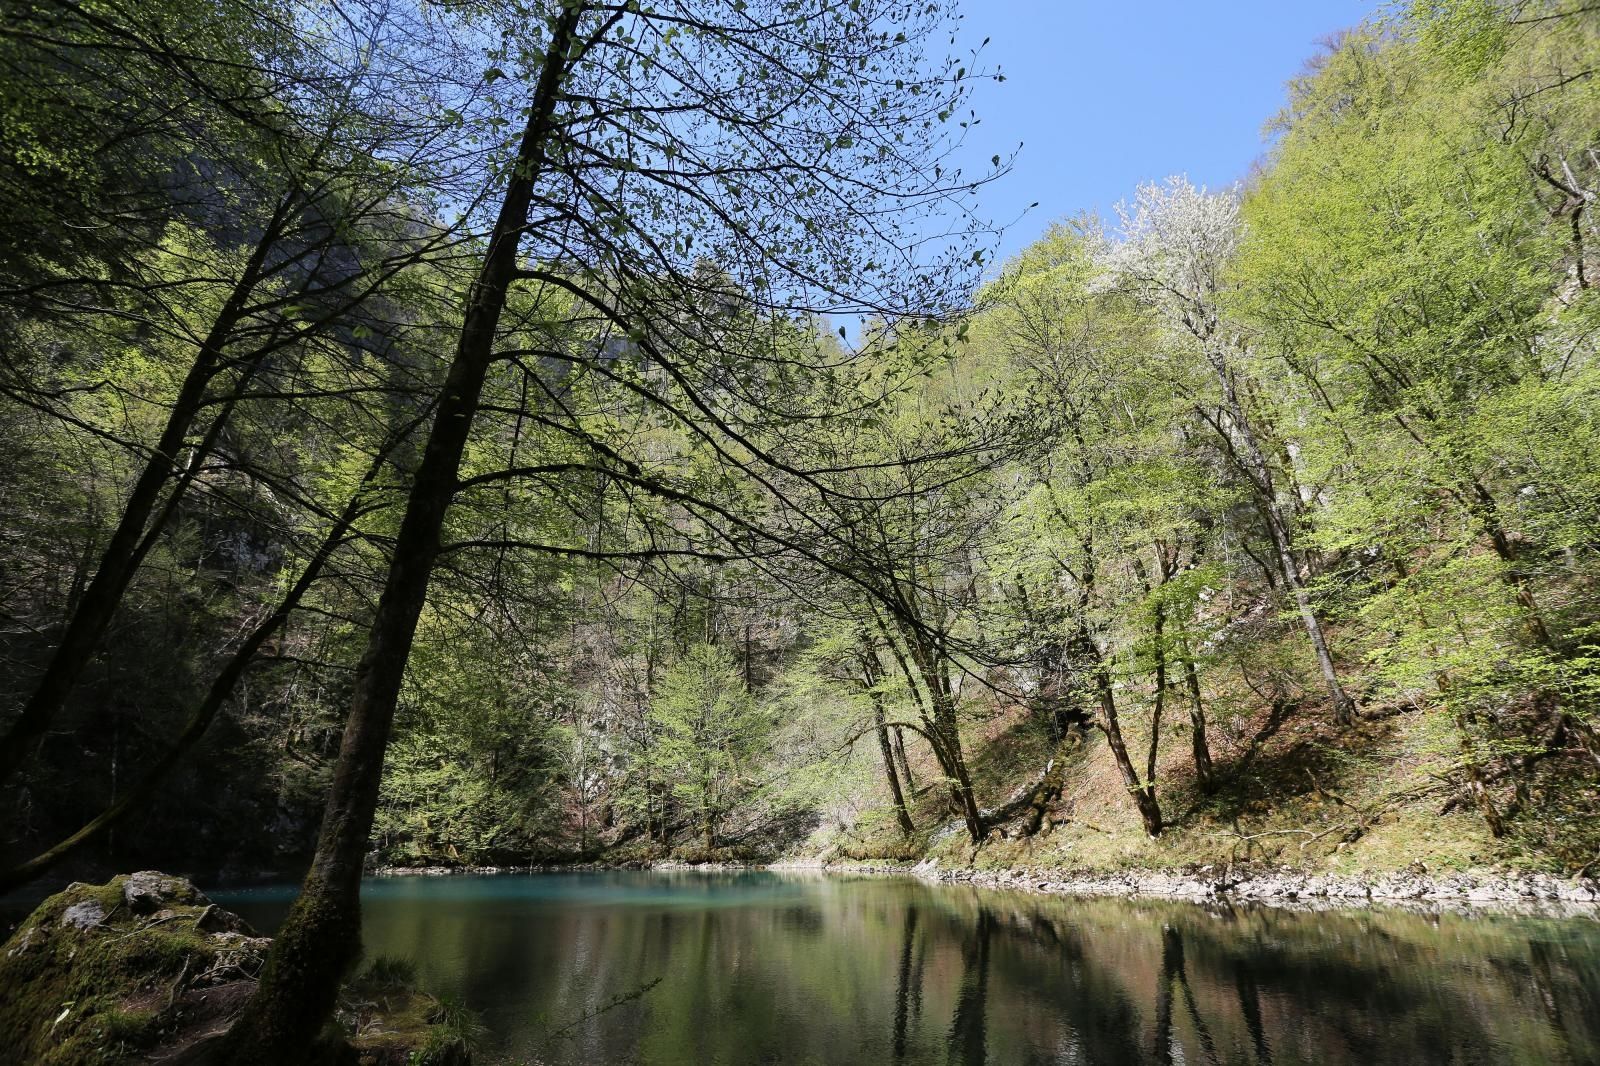 17.04.2020., Crni lug - Izvor rijeke Kupe u Nacionalnom parku Risnjak. ILustracije
Photo: Goran Kovacic/PIXSELL